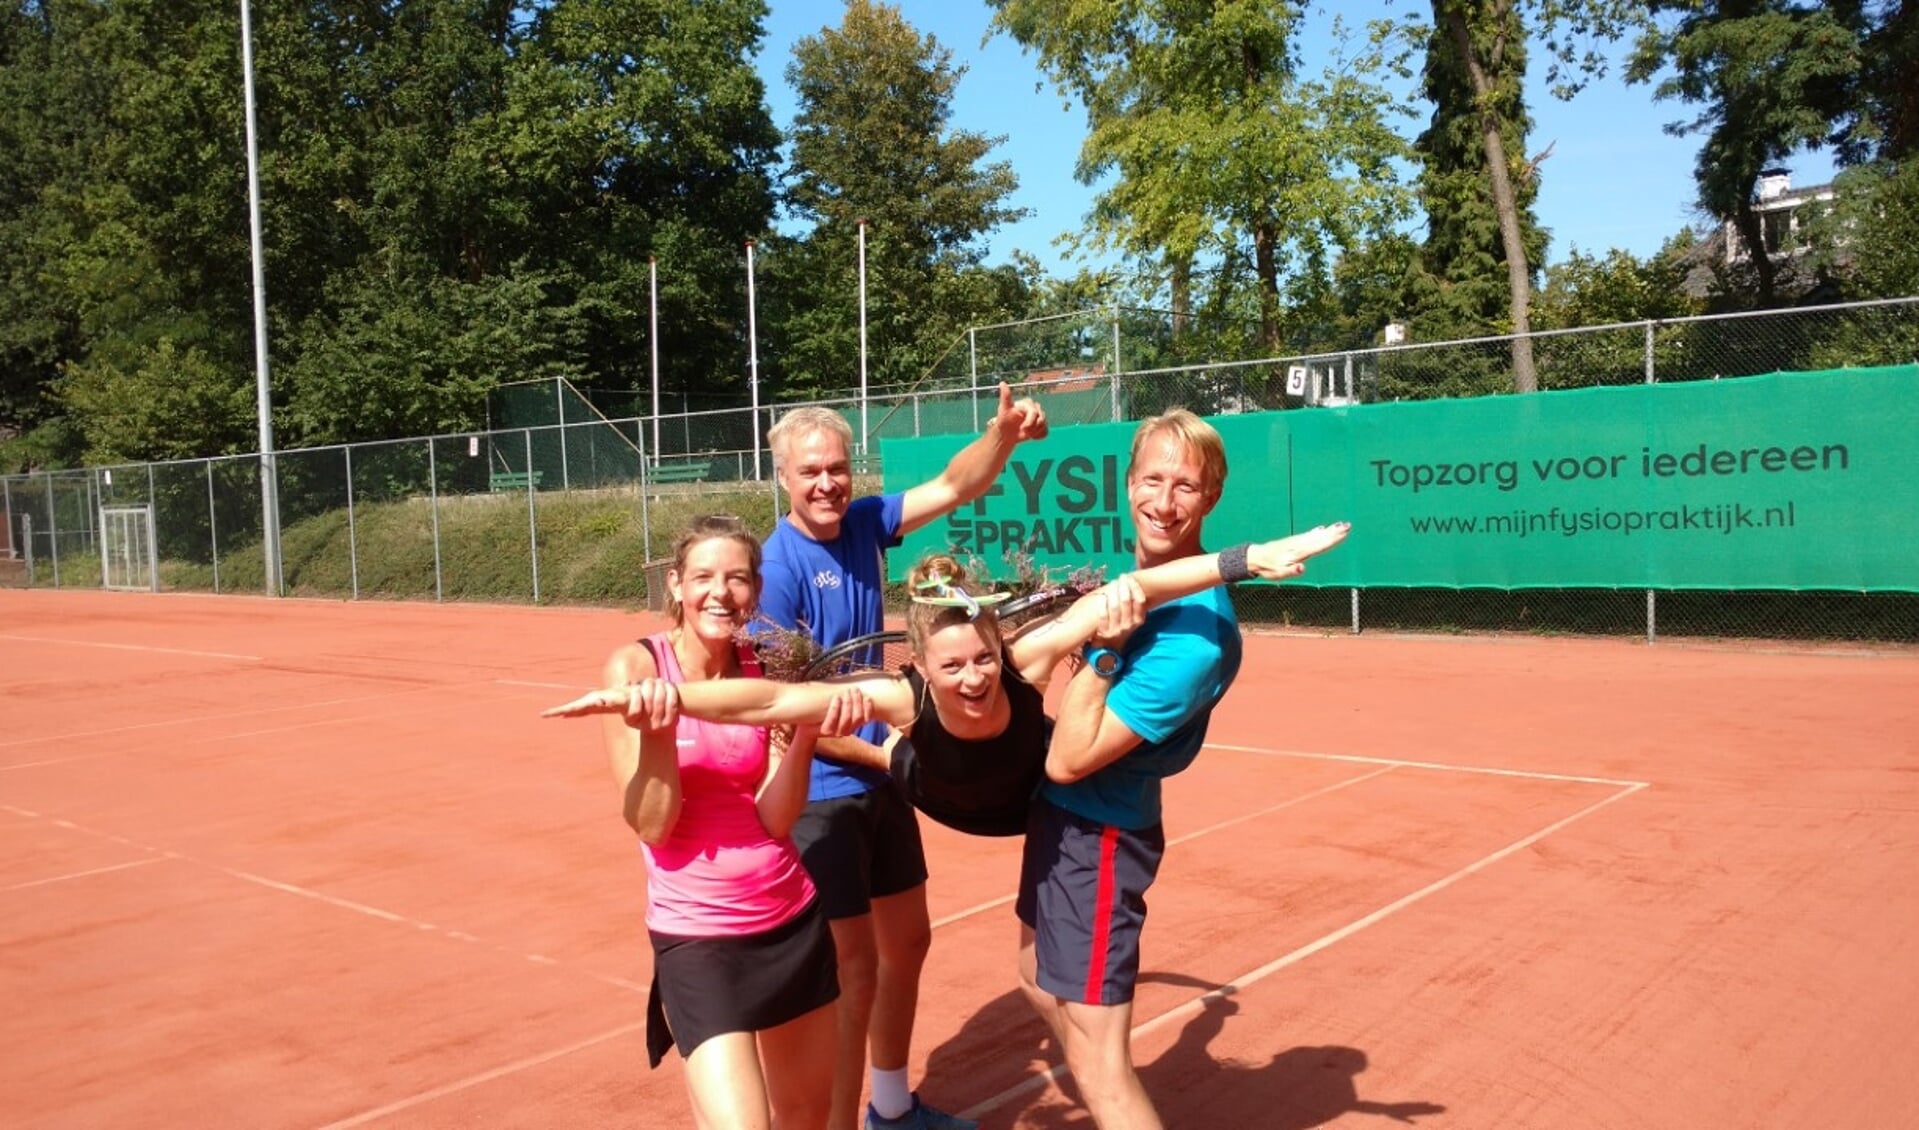 Op de foto het winnende team met Marissa de Blois, Anton Dijkhuis, Annet van Veldhuisen en Niels Kraaijpoel. Marjolein Elings en Stefan van Langevelde ontbreken.